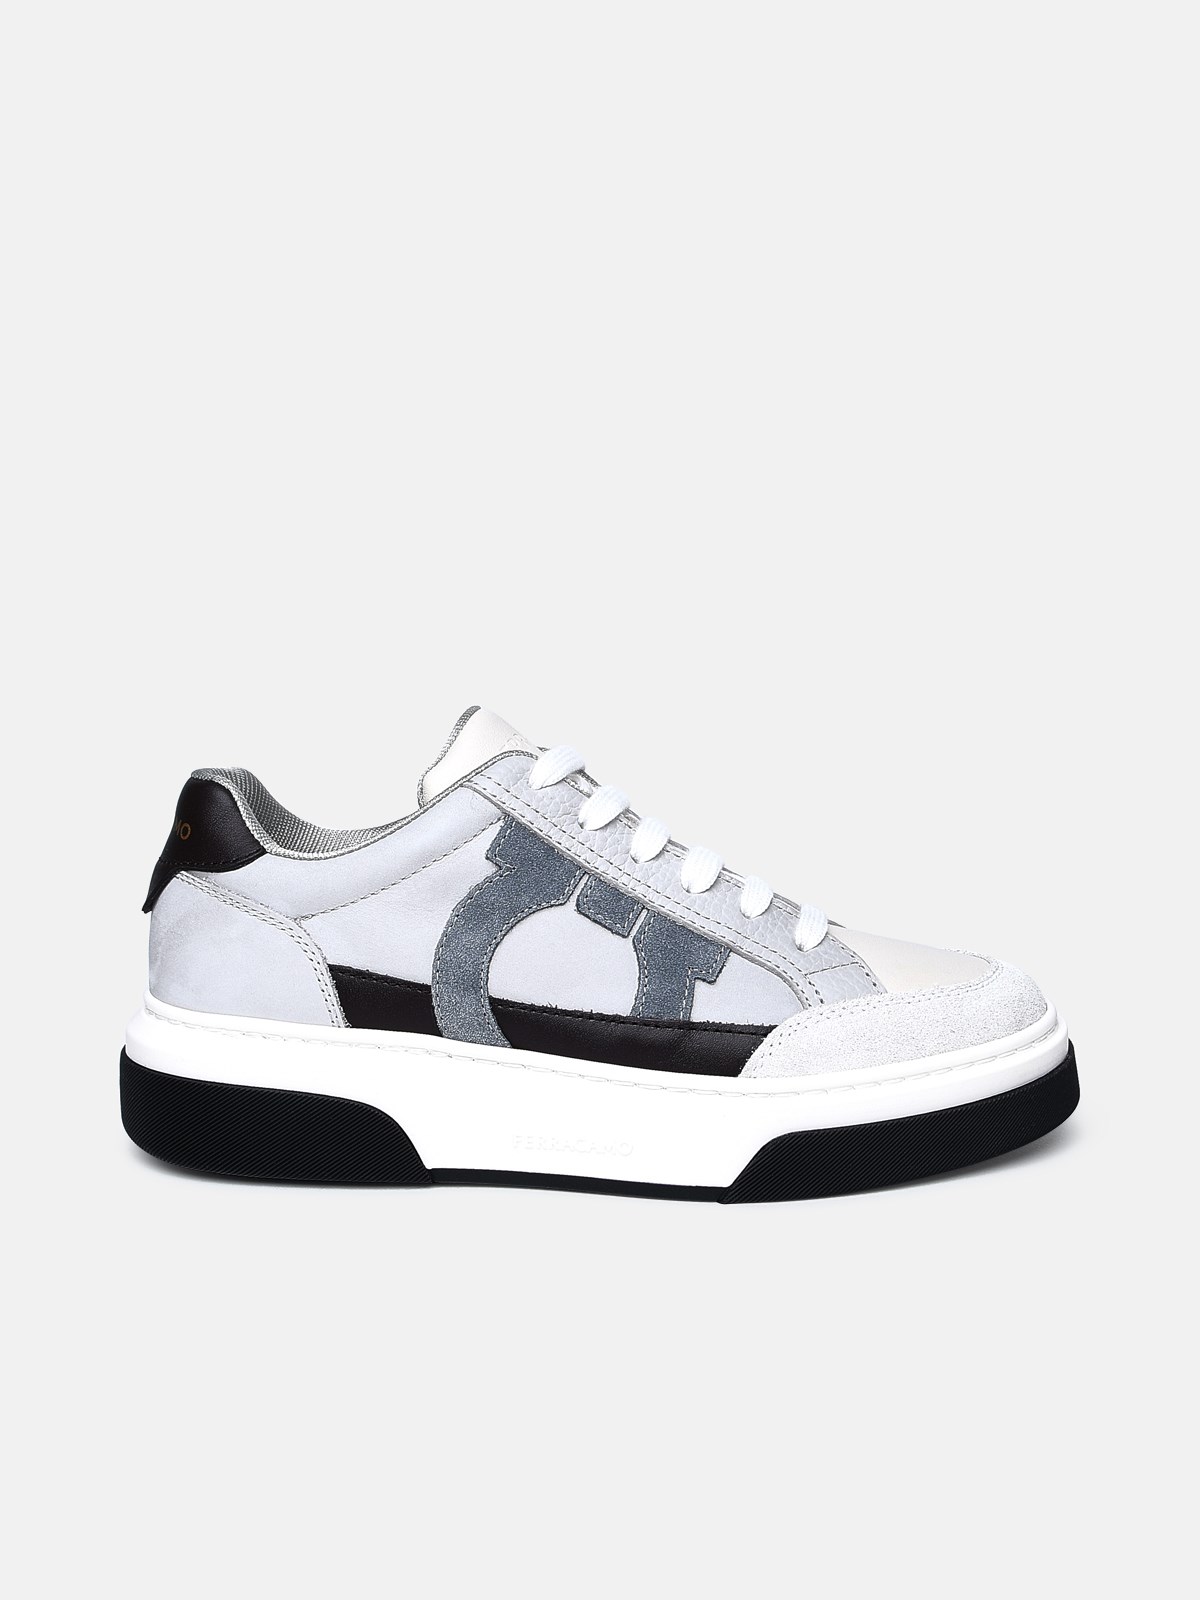 Ferragamo Multicolor Nappa Leather Sneakers In Grey